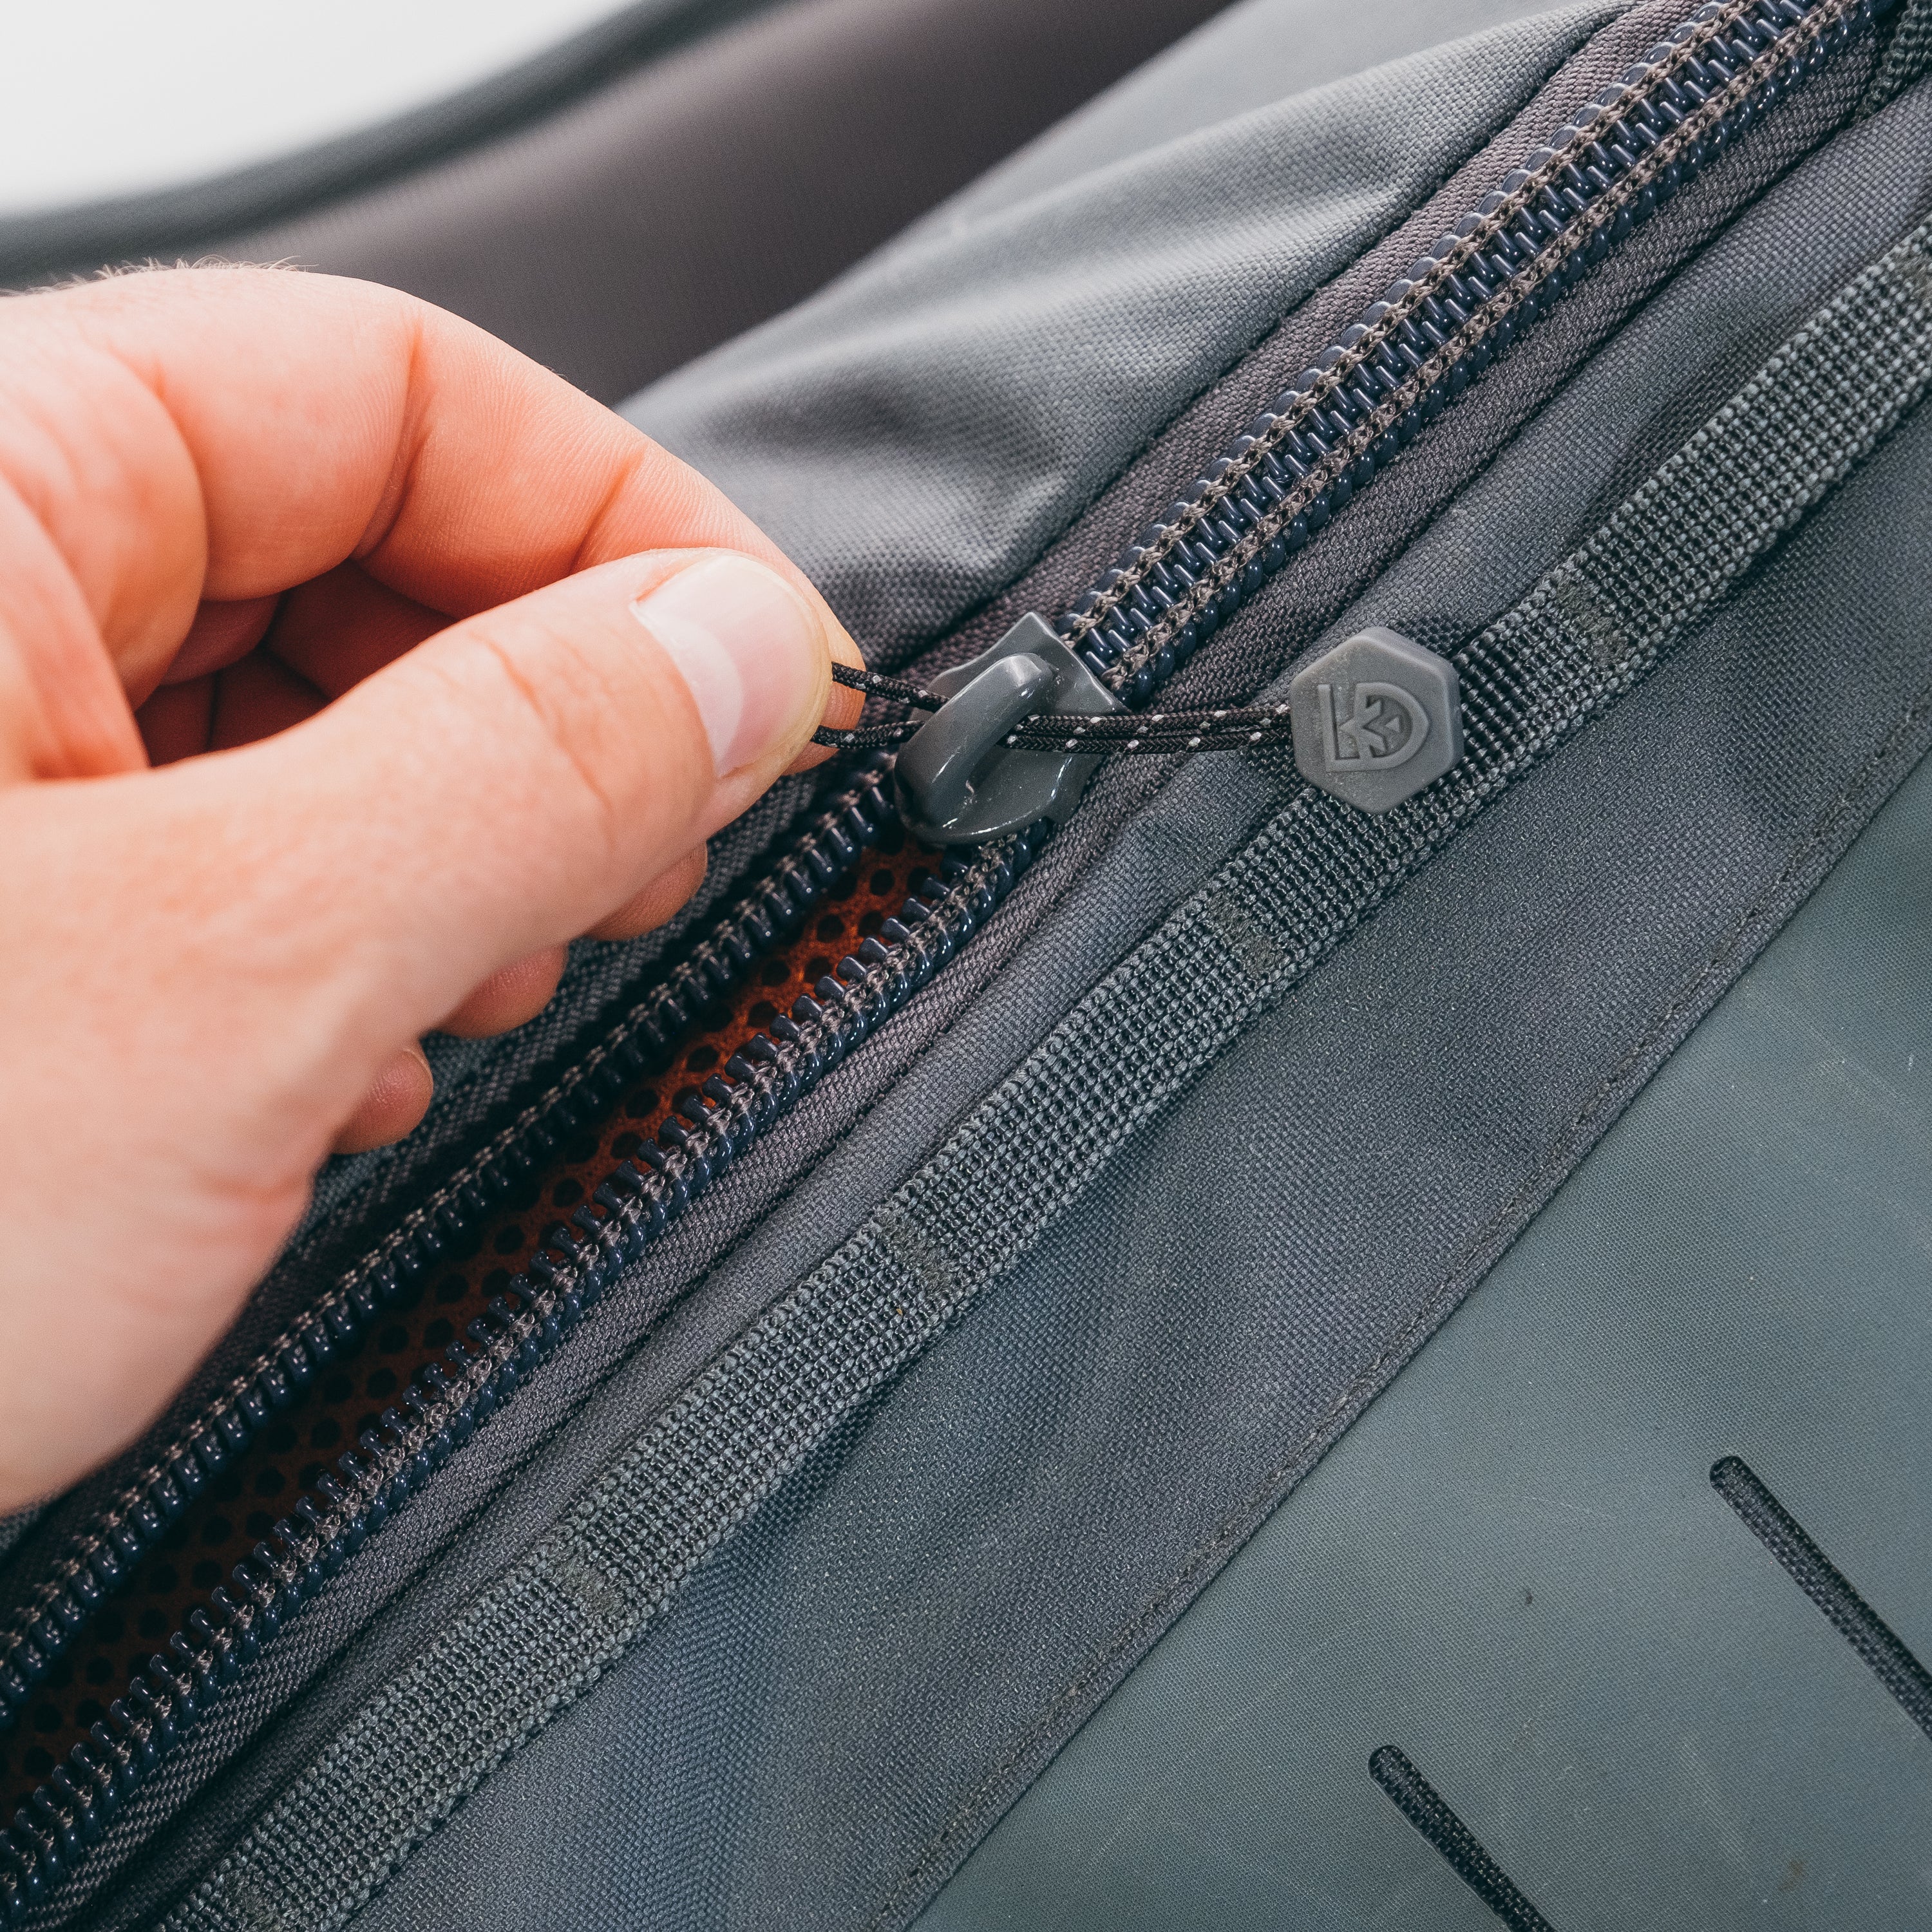 Fix A Broken Suitcase Zipper Pull Easily